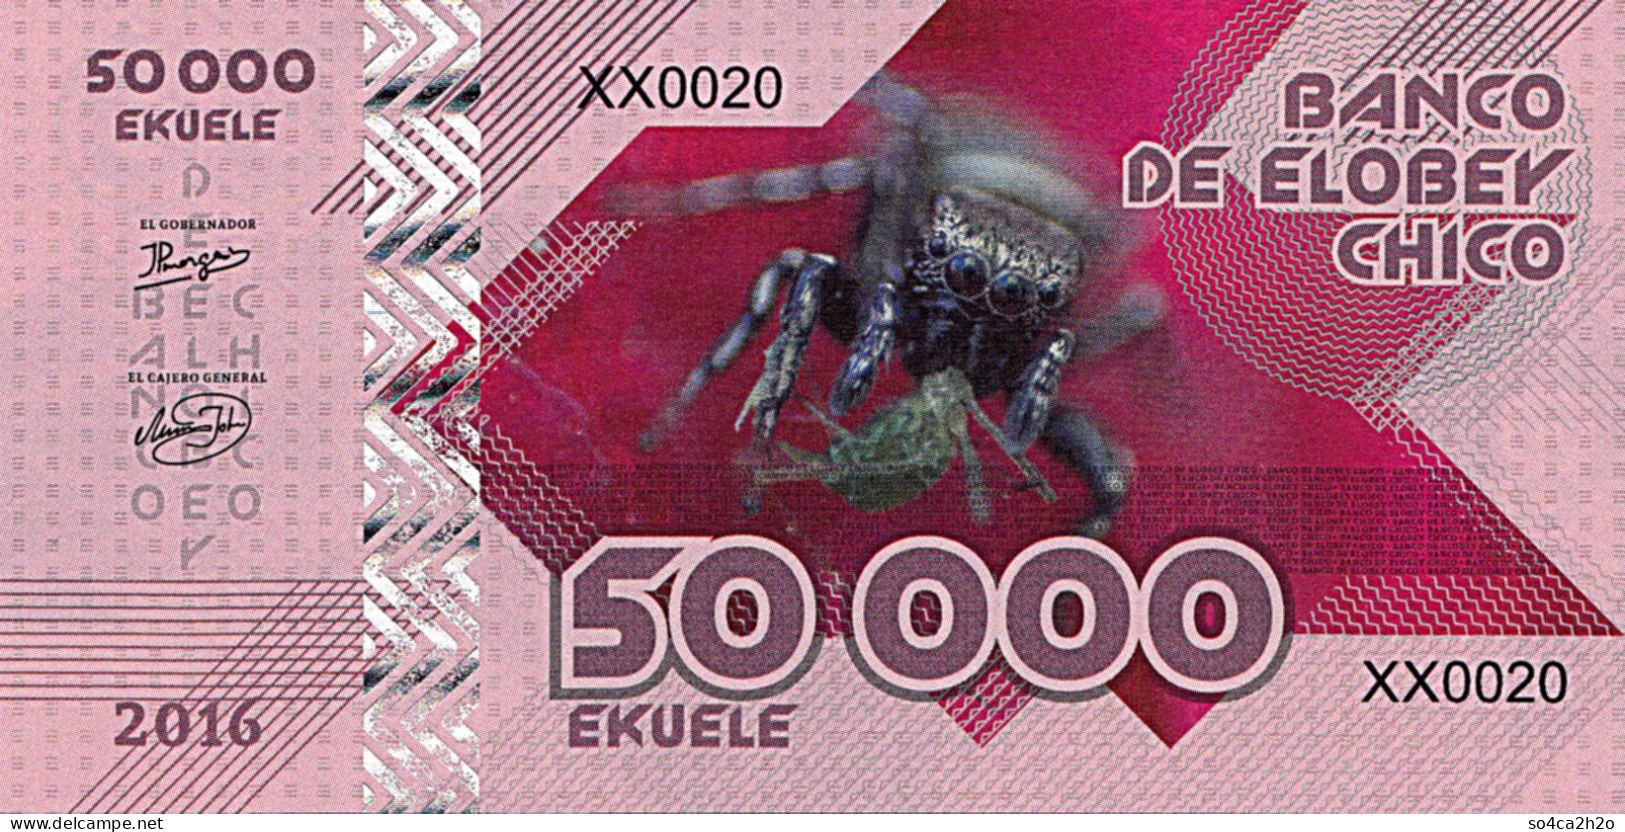 Elobey Chico 50 000 EKUELE 2016 SPIDER Tarantula  UNC - Ficción & Especímenes